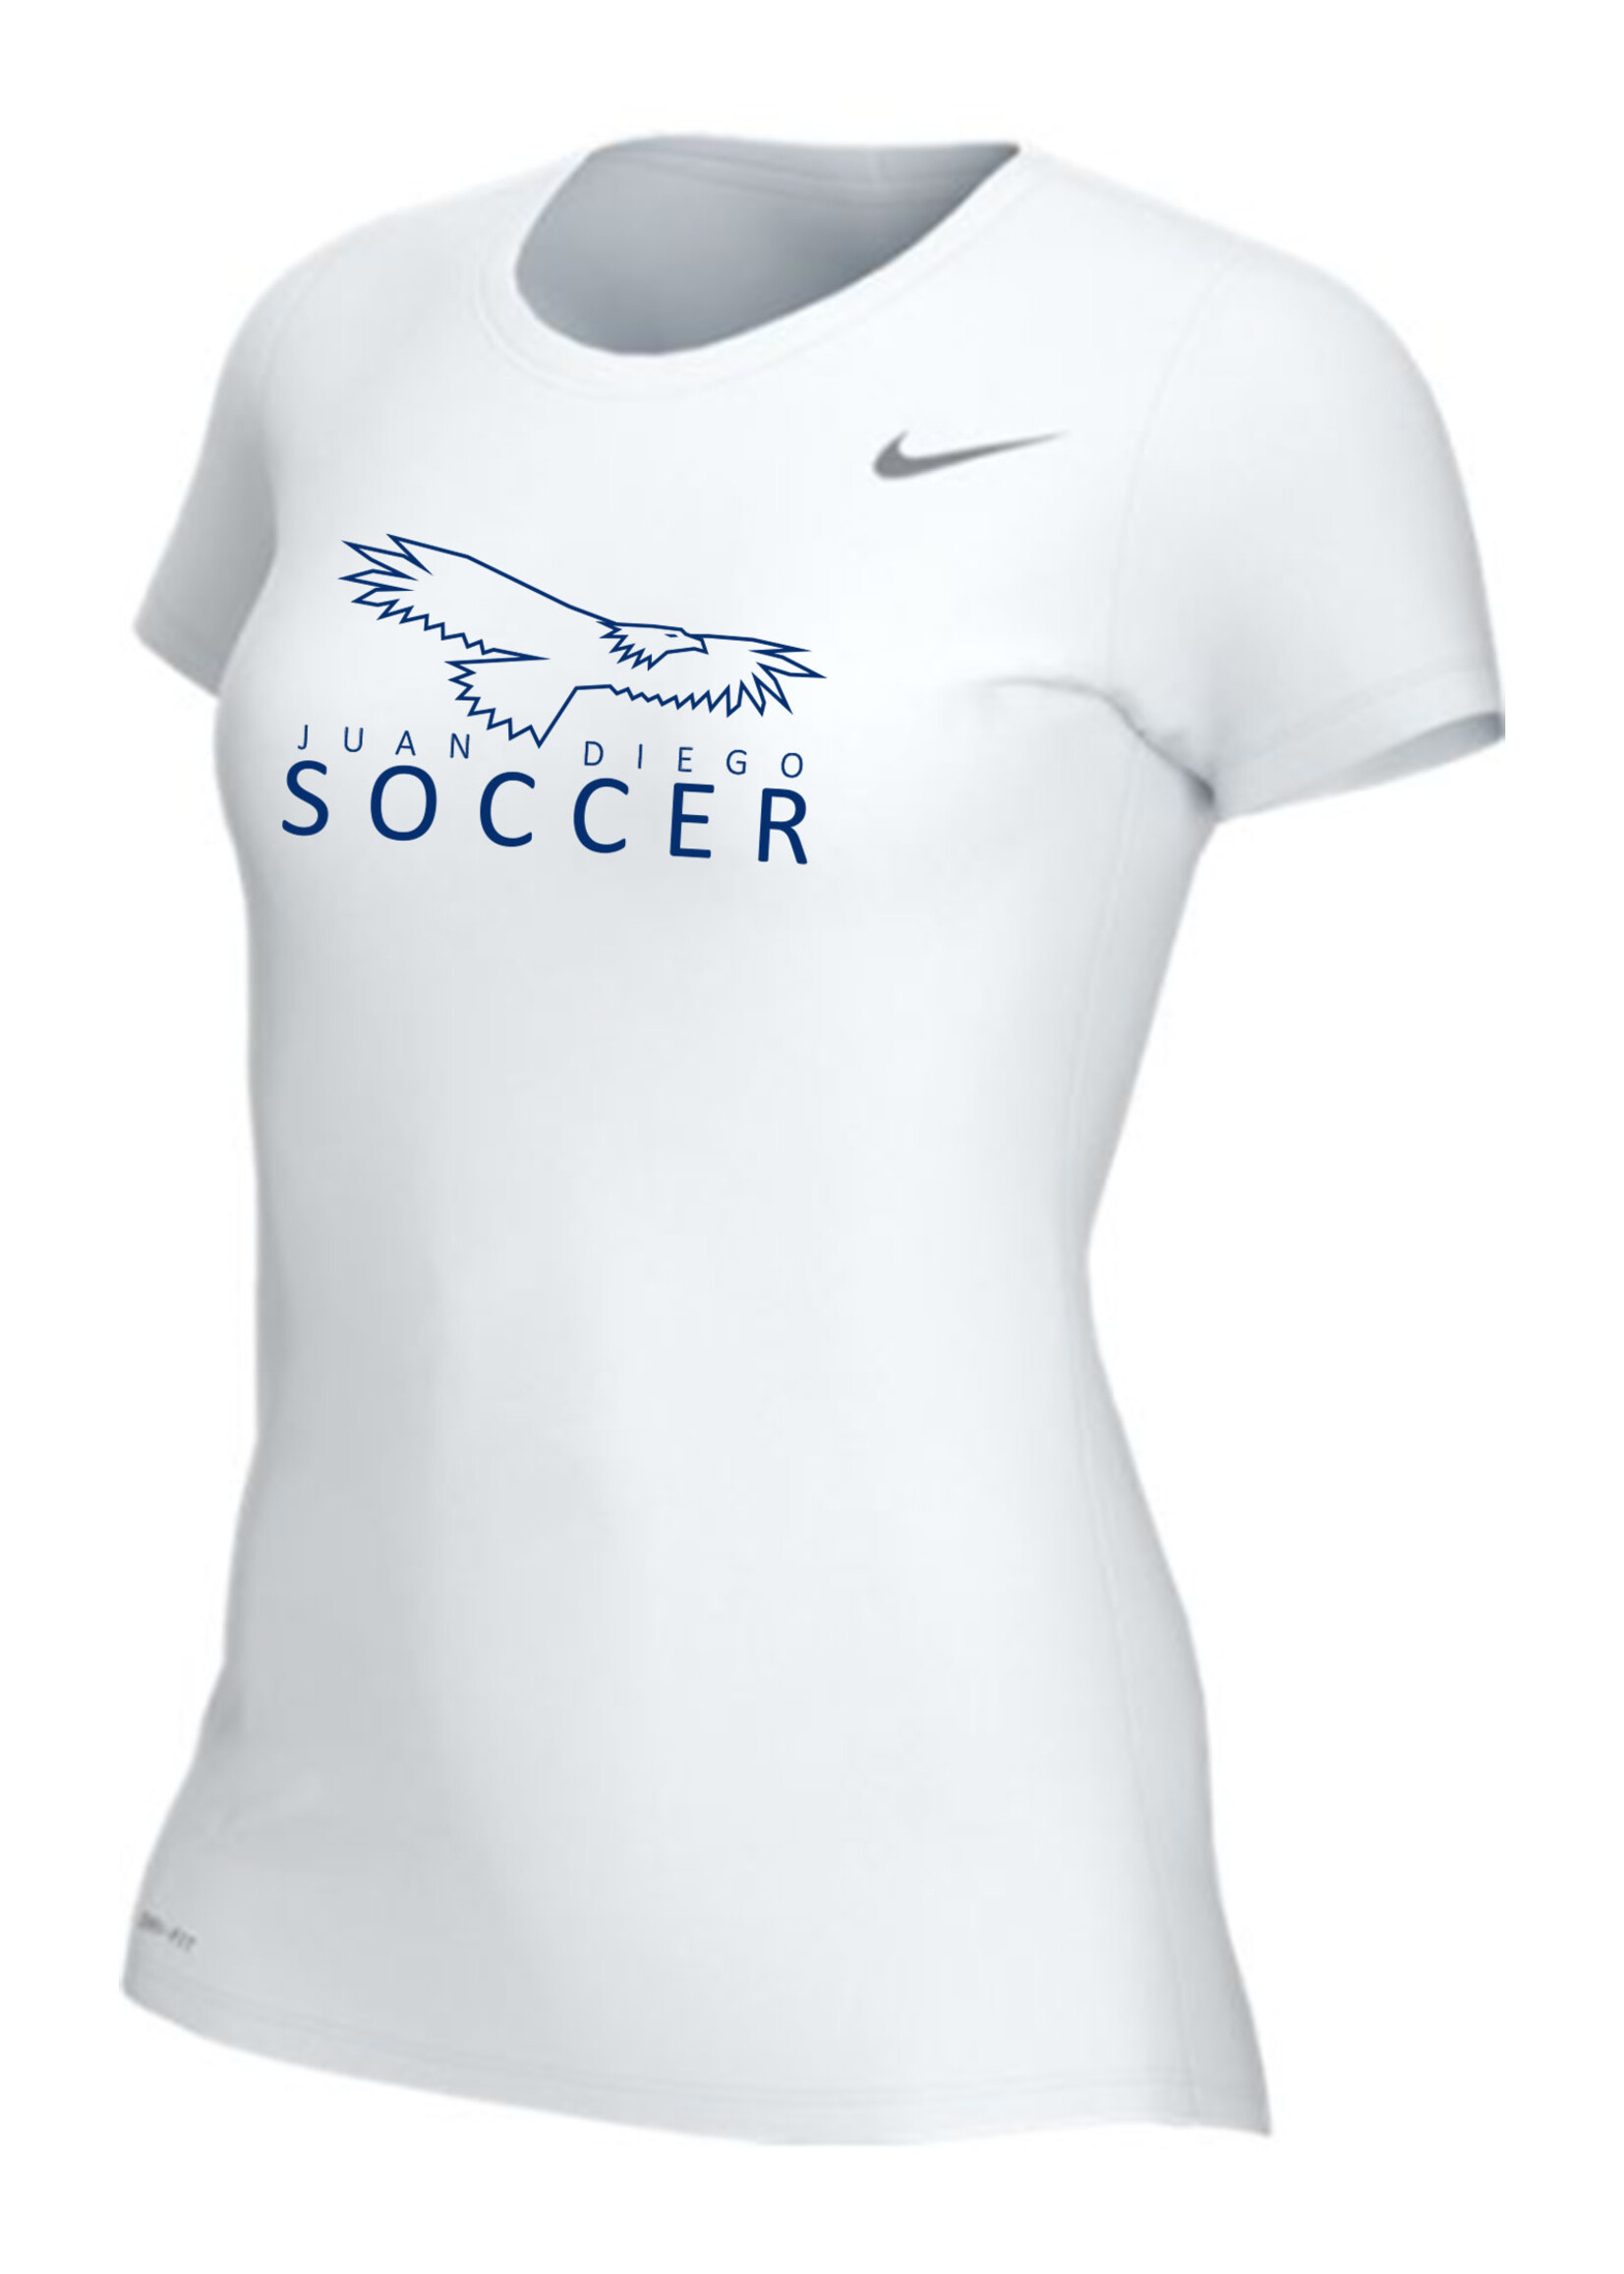 NON-UNIFORM JD Soccer Nike Legend Short Sleeve Shirt, Men's & Women's